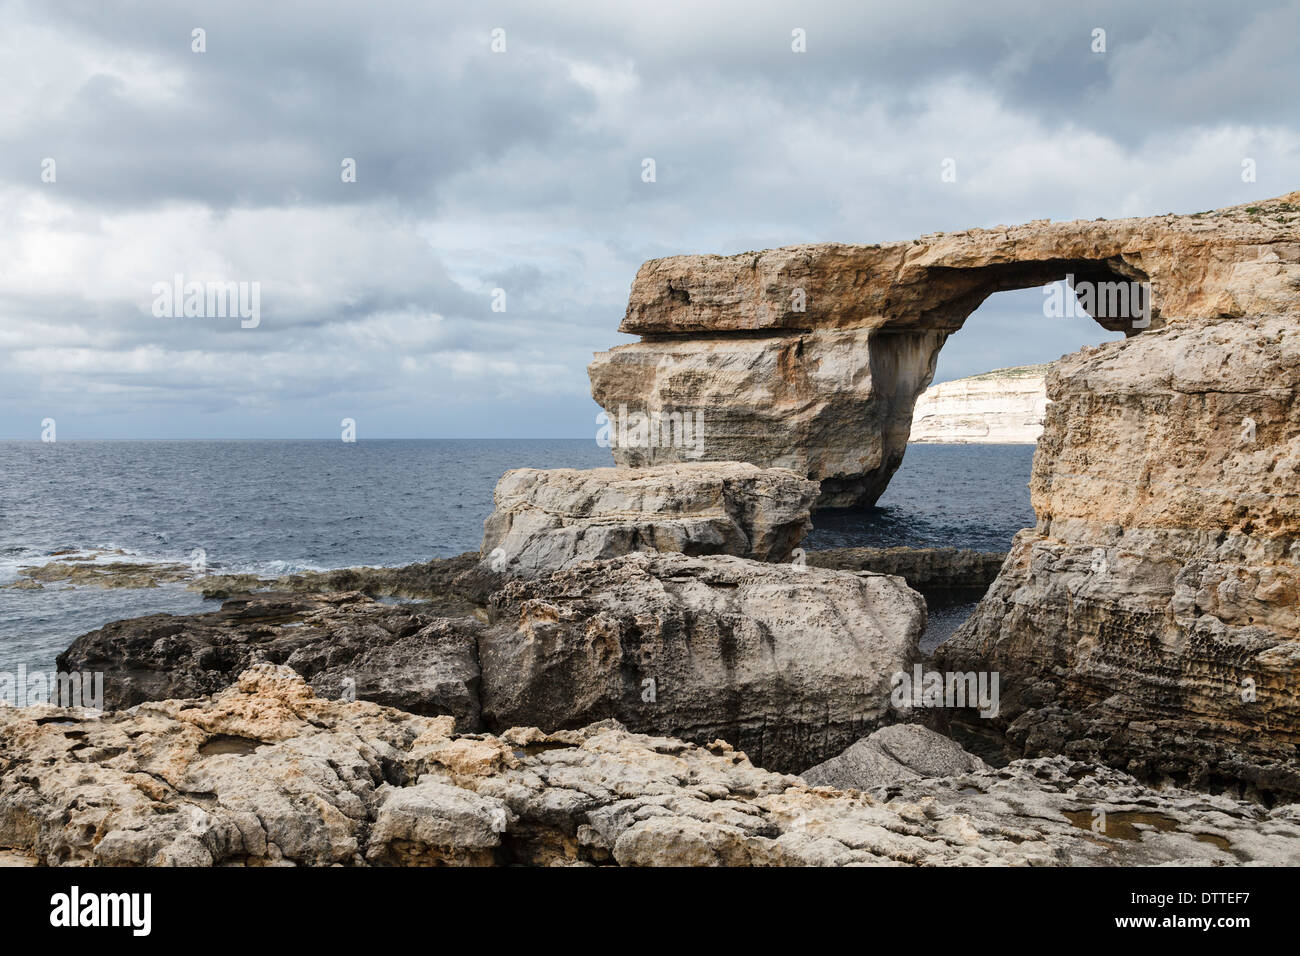 The Azure Window, Dwejra Point, Gozo, Malta Stock Photo